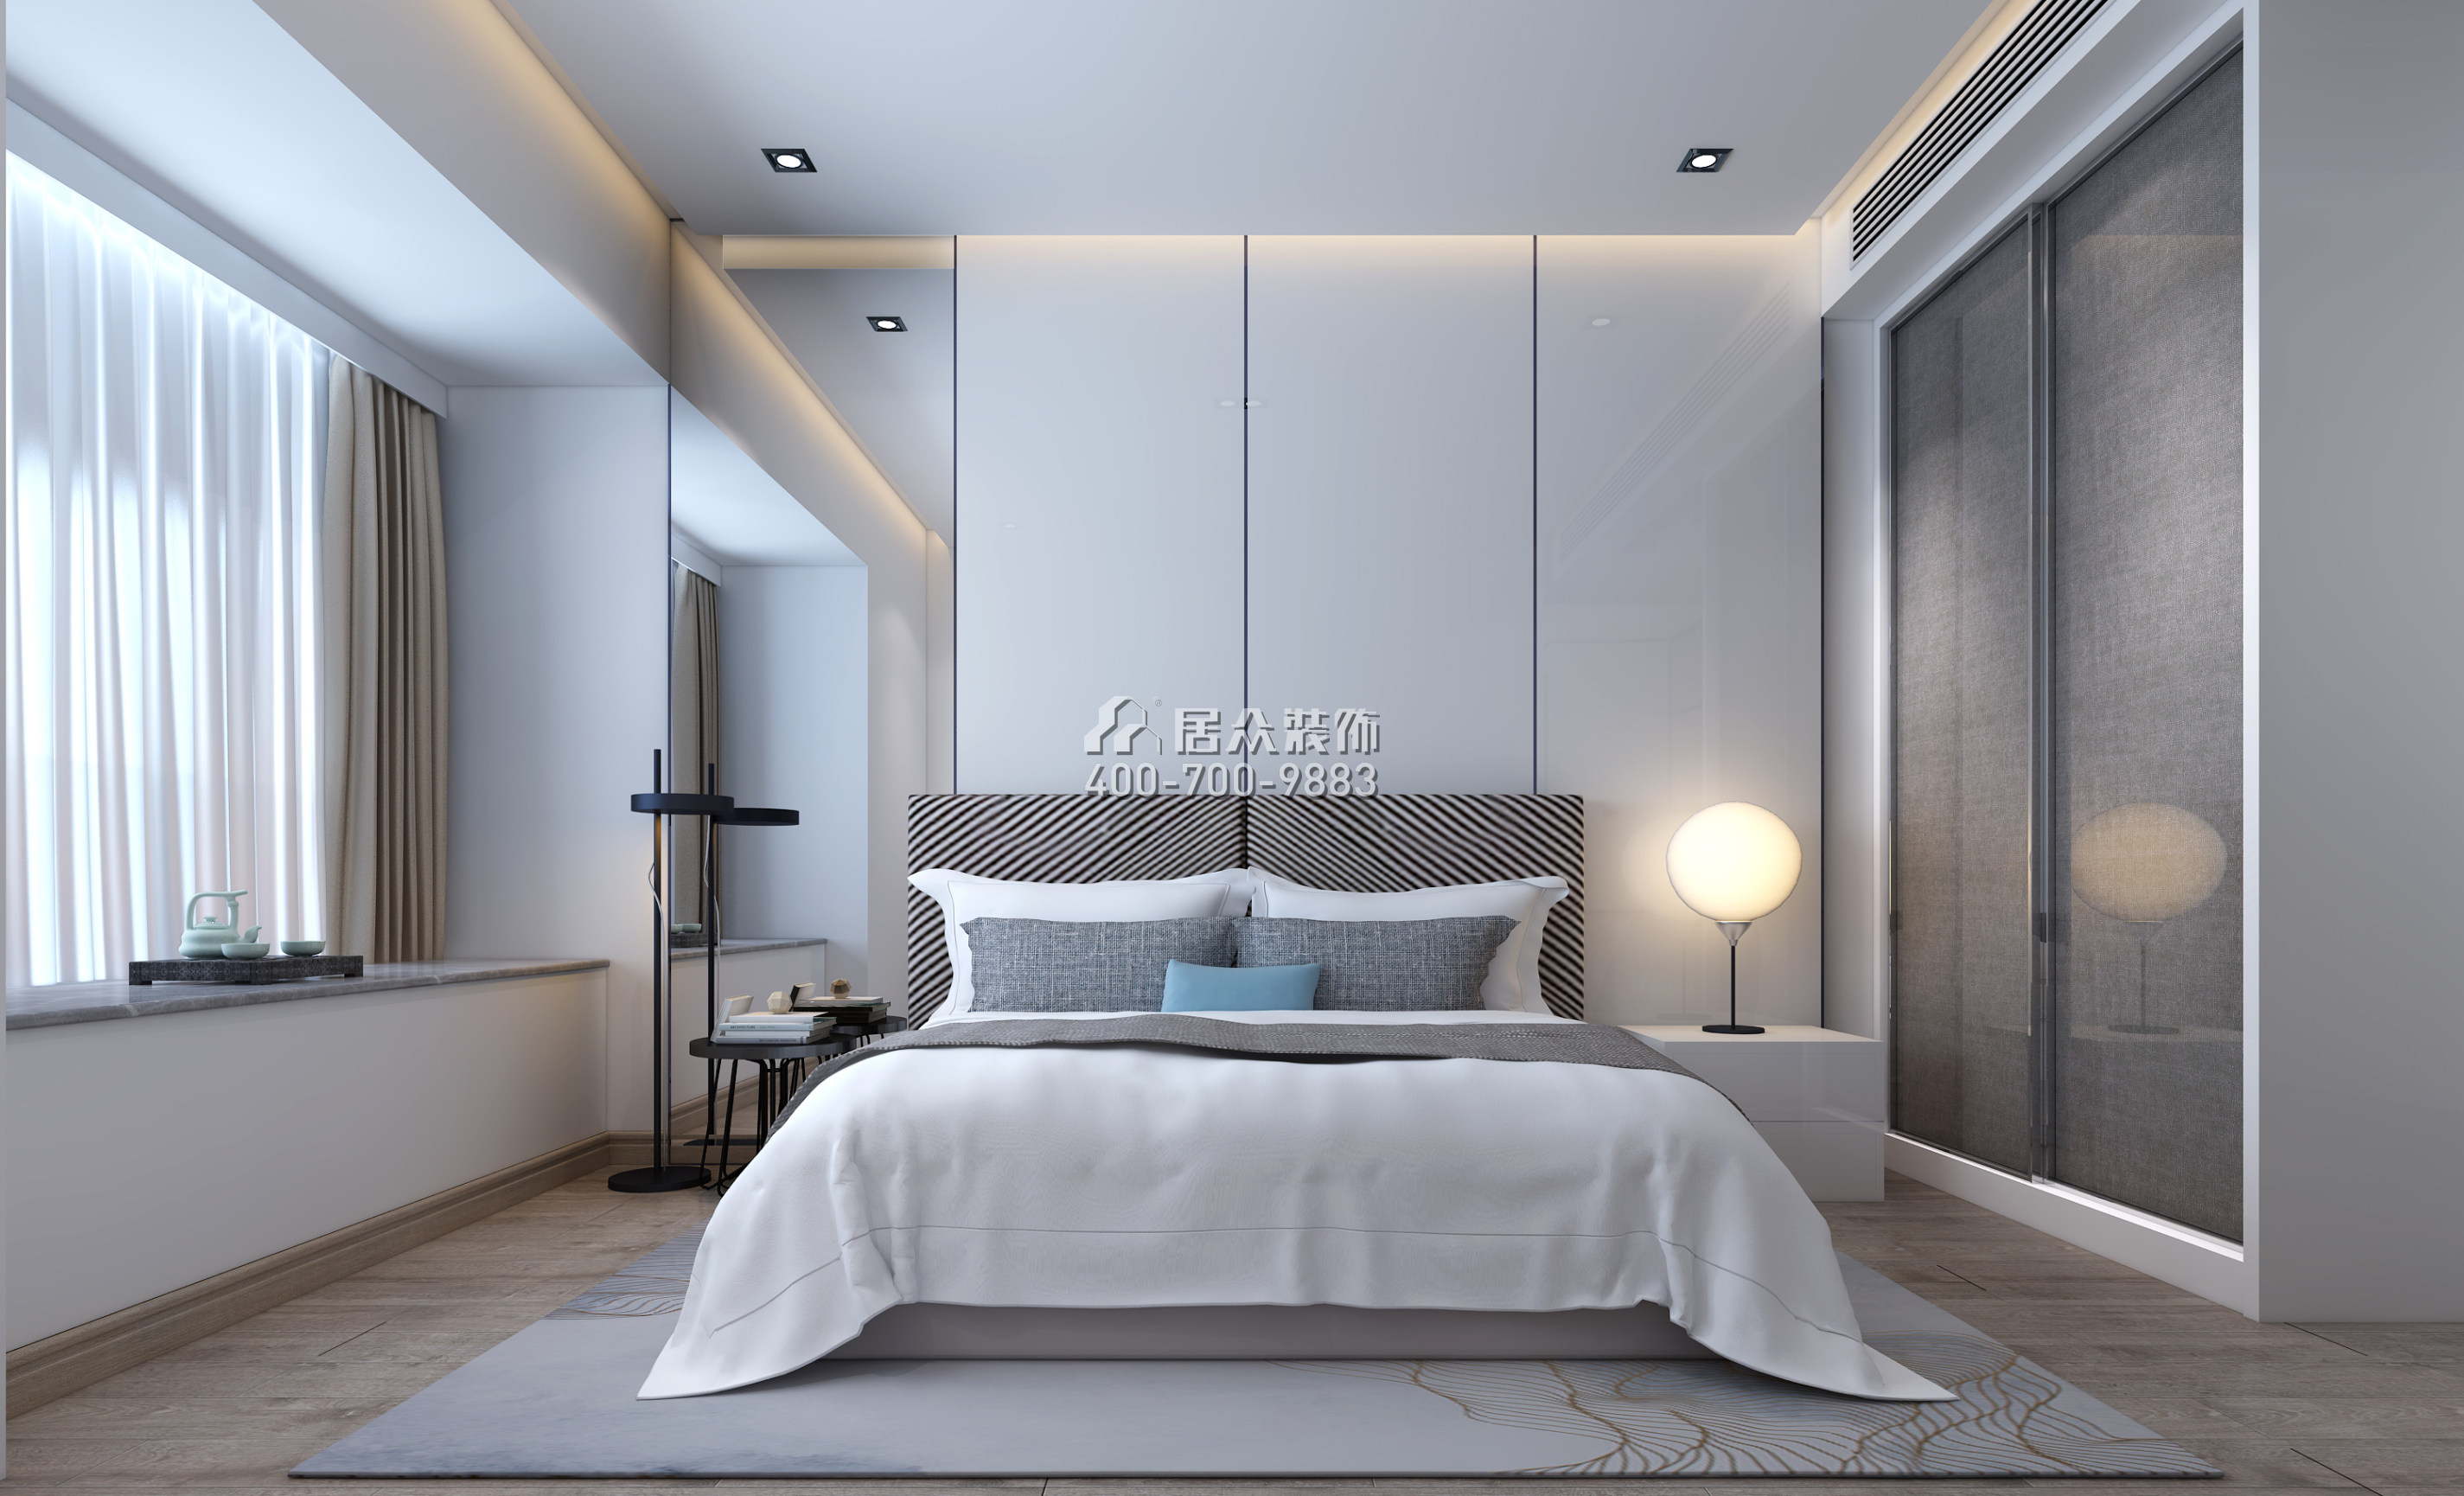 华润城389平方米现代简约风格平层户型卧室装修效果图